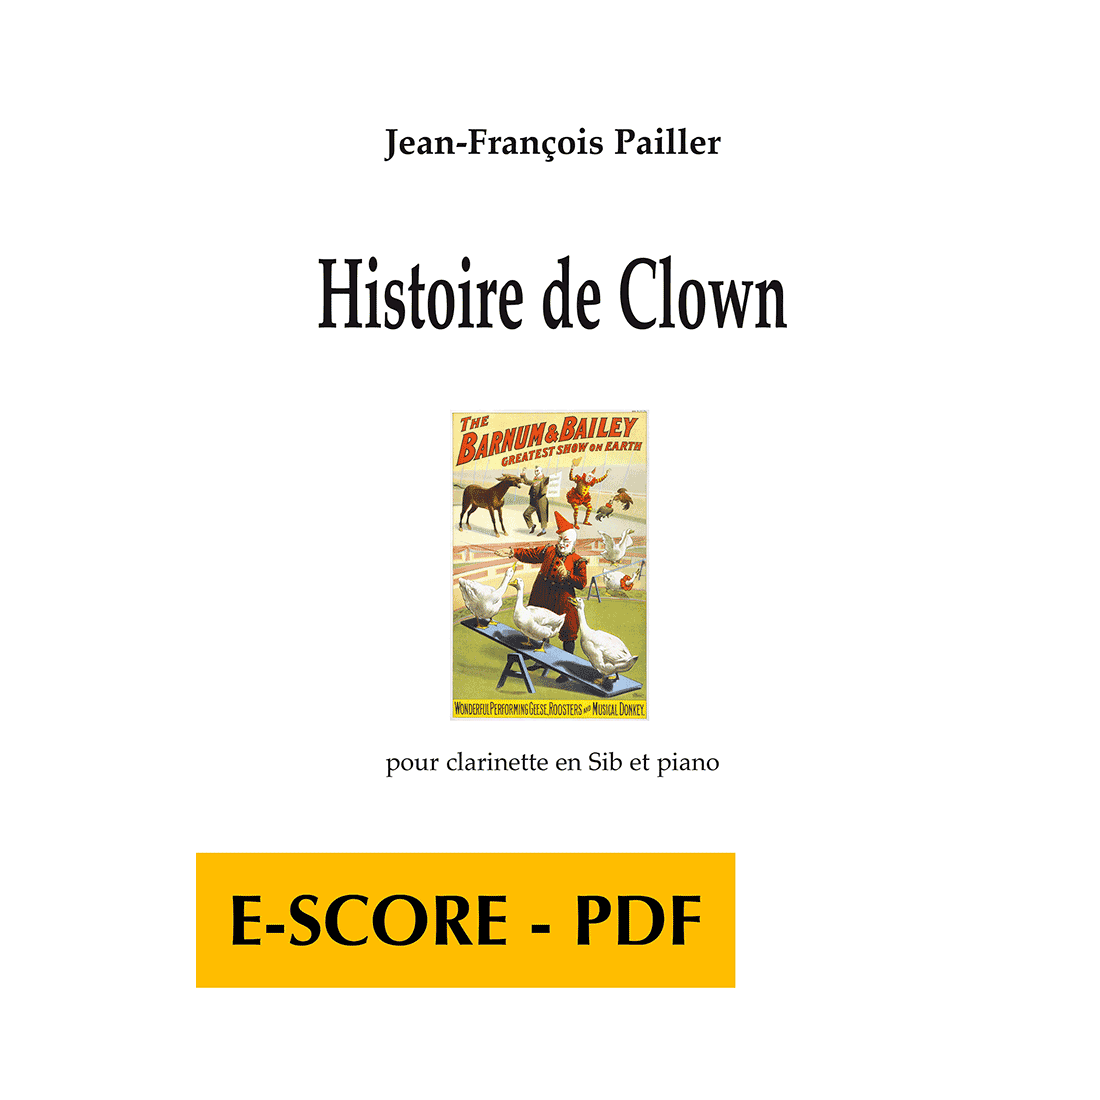 Histoire de clown for clarinet and piano - E-score PDF